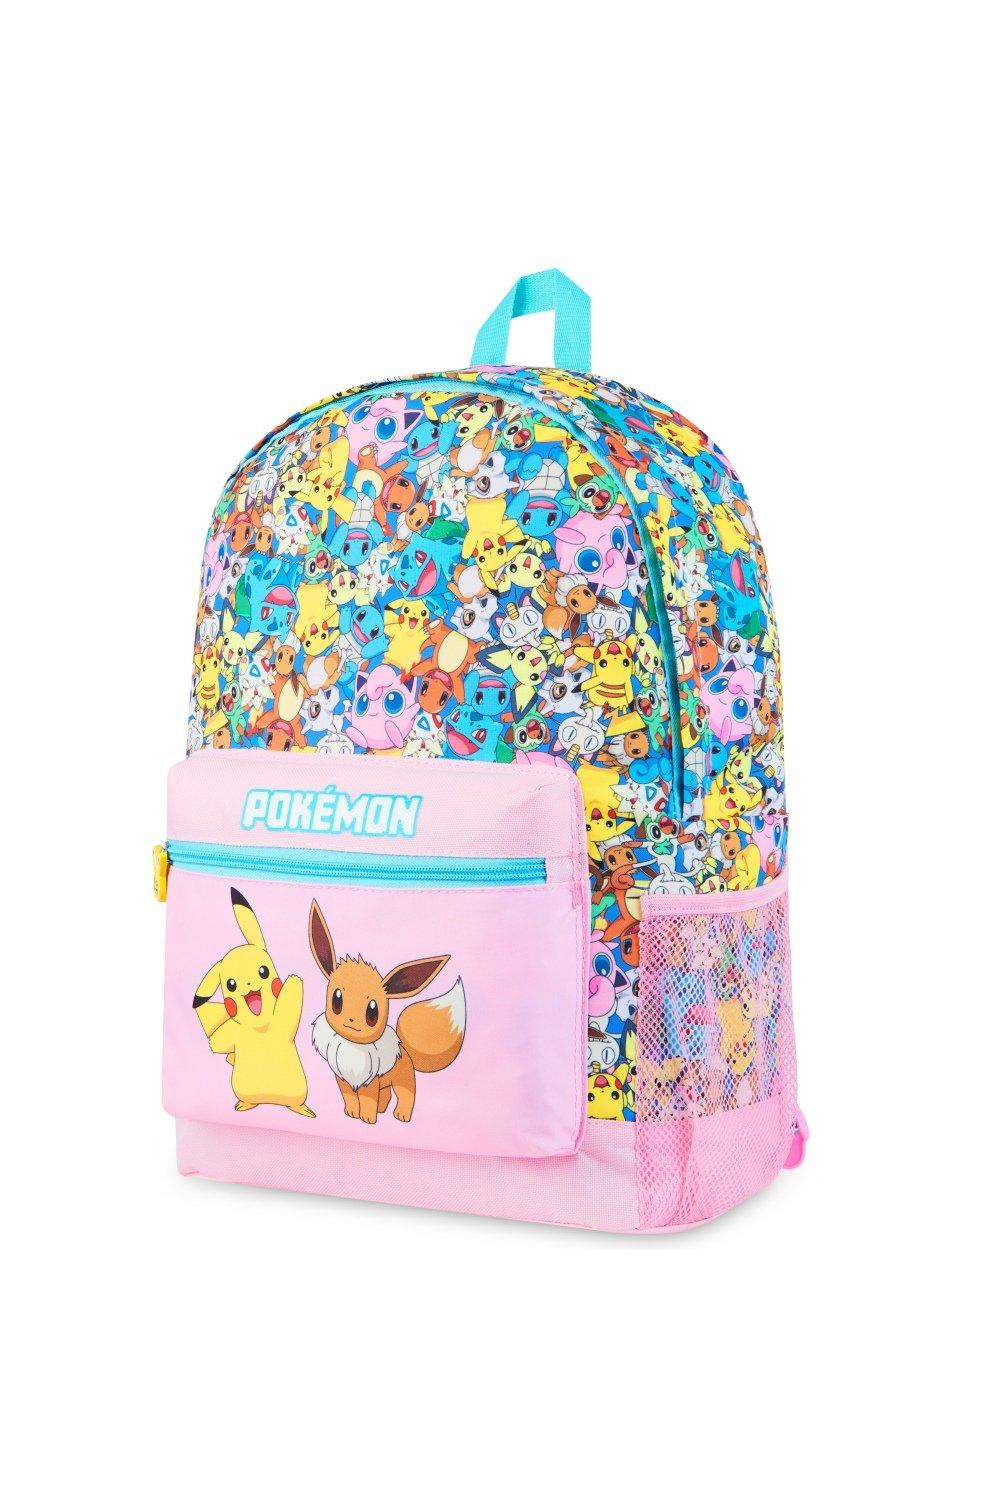 Розовый школьный рюкзак AOP Pokemon, мультиколор базовый рюкзак eevee розовый bp574872pok pokemon розовый